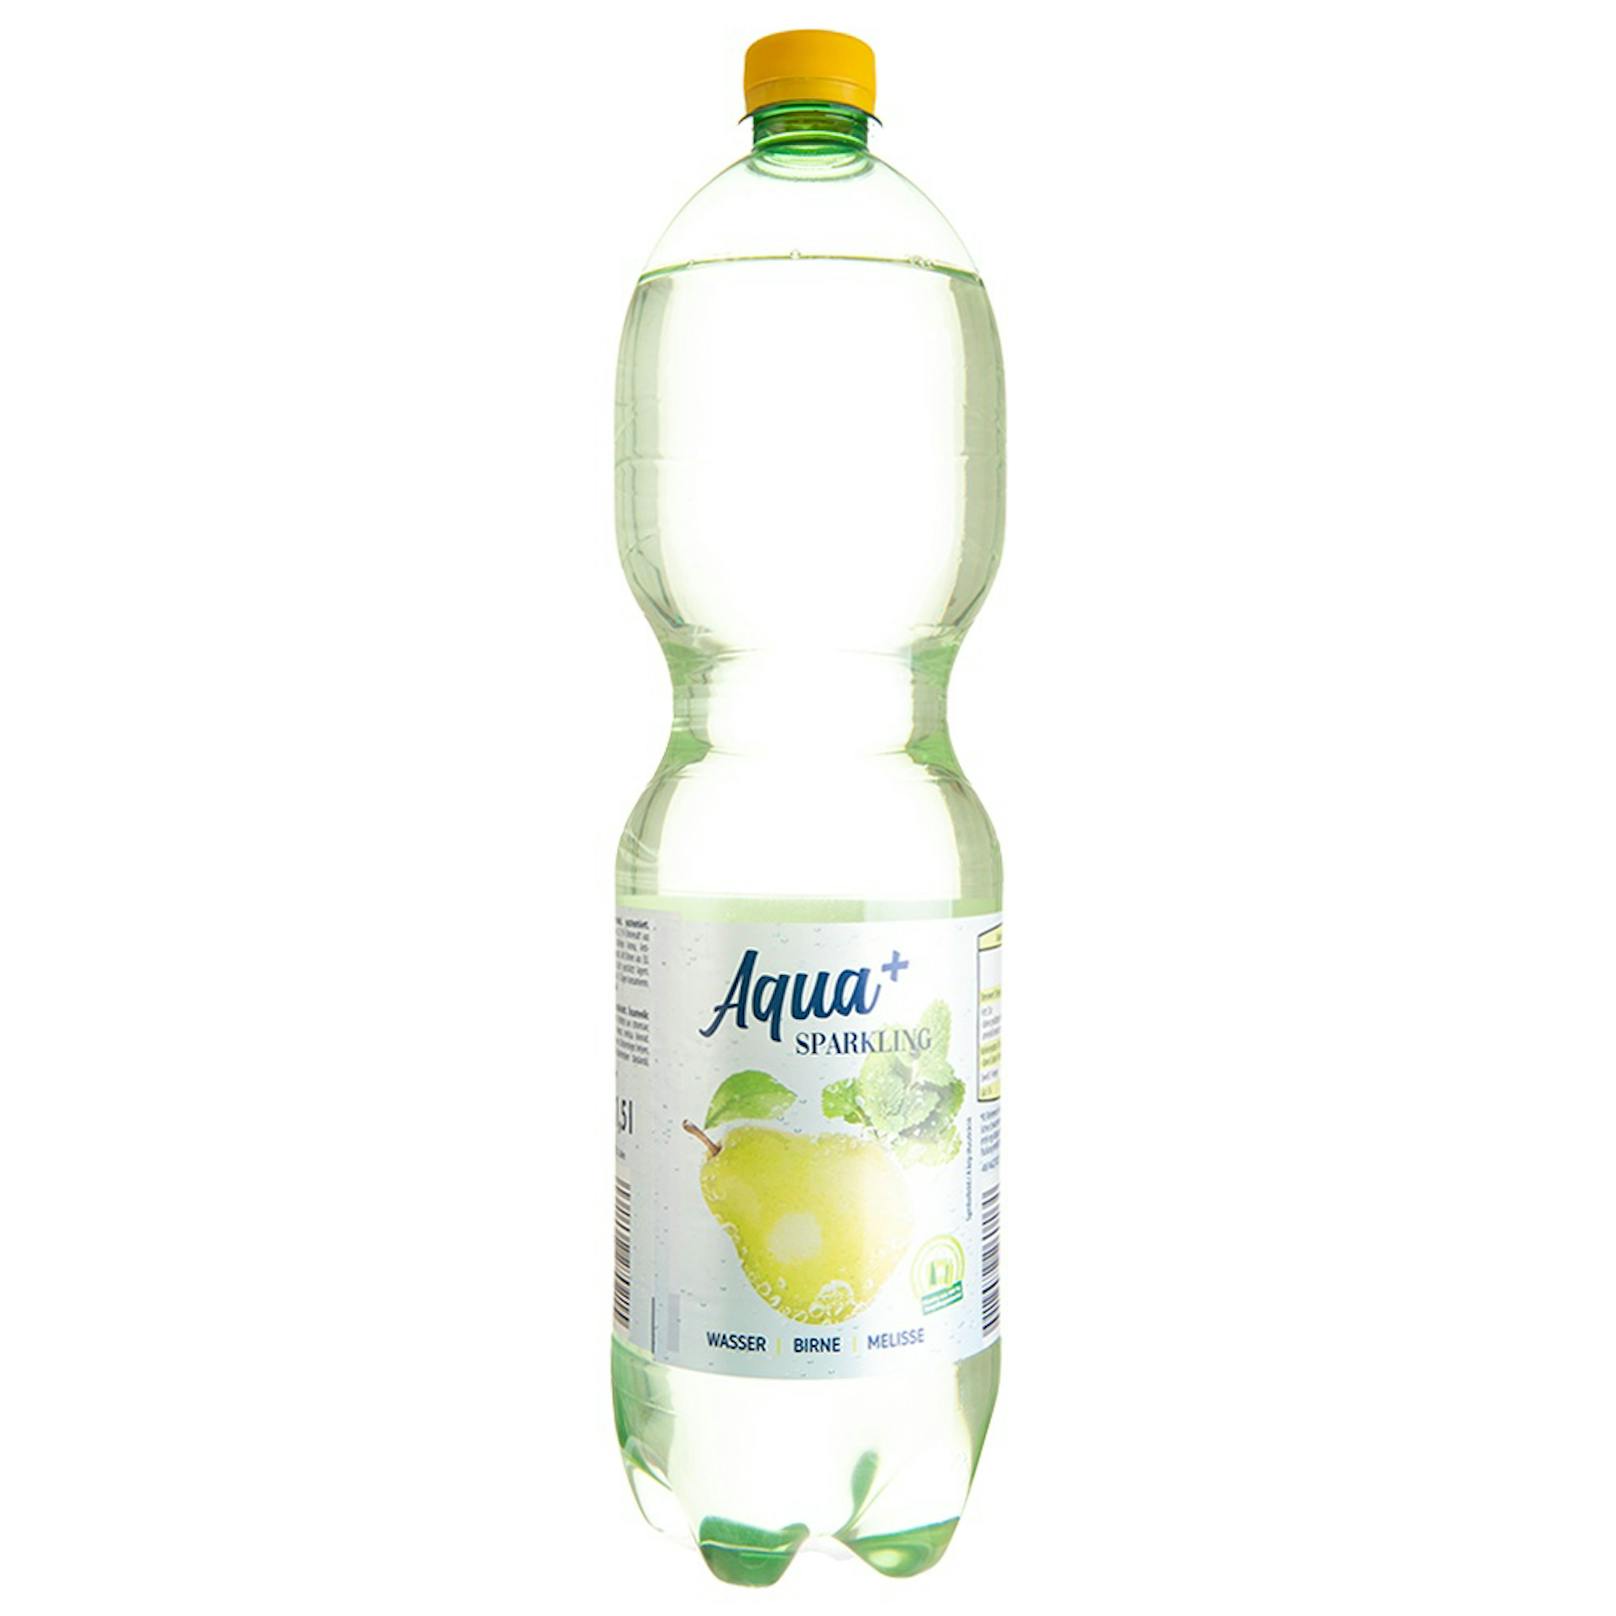 Die 1,5-Liter-Flasche Hofer Aqua+Birne Melisse enthält 16,6 Zuckerwürfel pro Flasche. Das entspricht 10,5 Gramm Zucker.